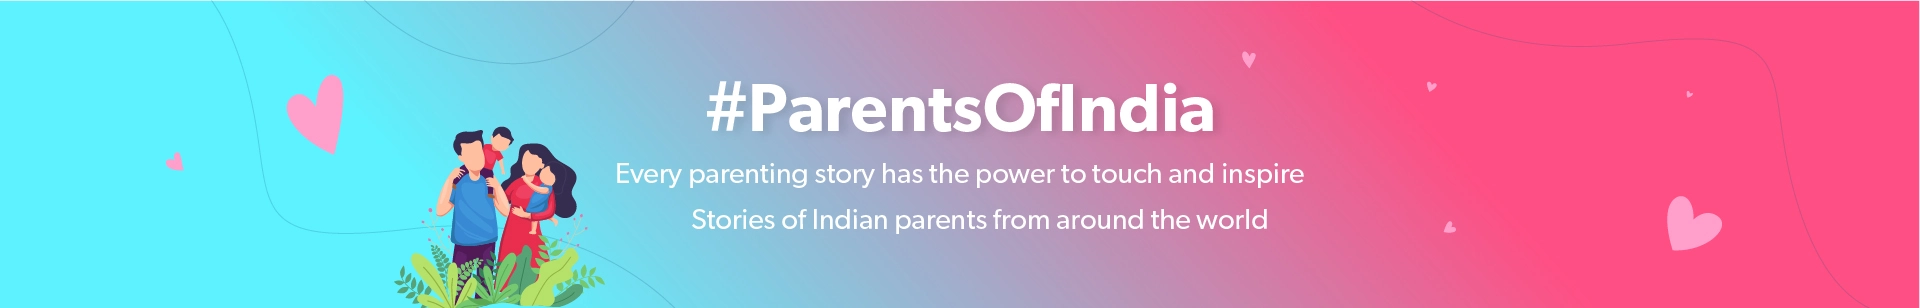 ParentsofIndia